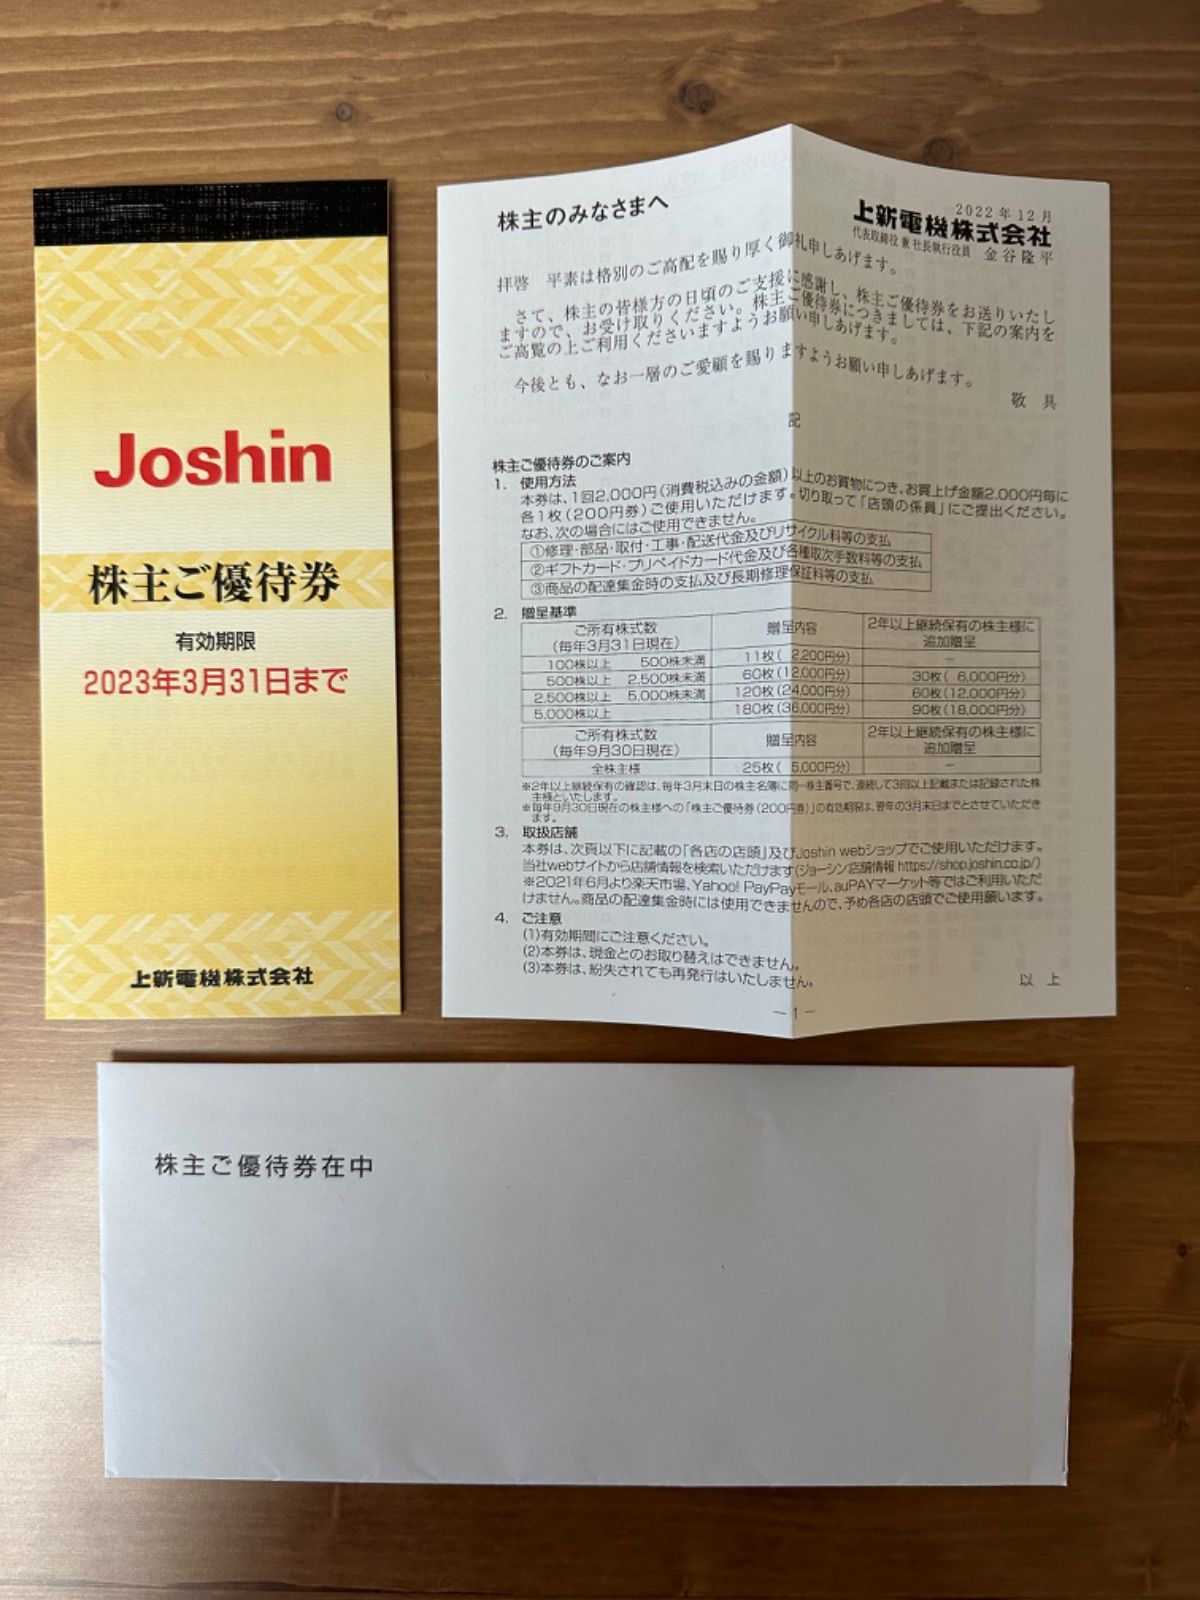 上新電機 ジョーシン Joshin 5000円分×2冊 株主優待券